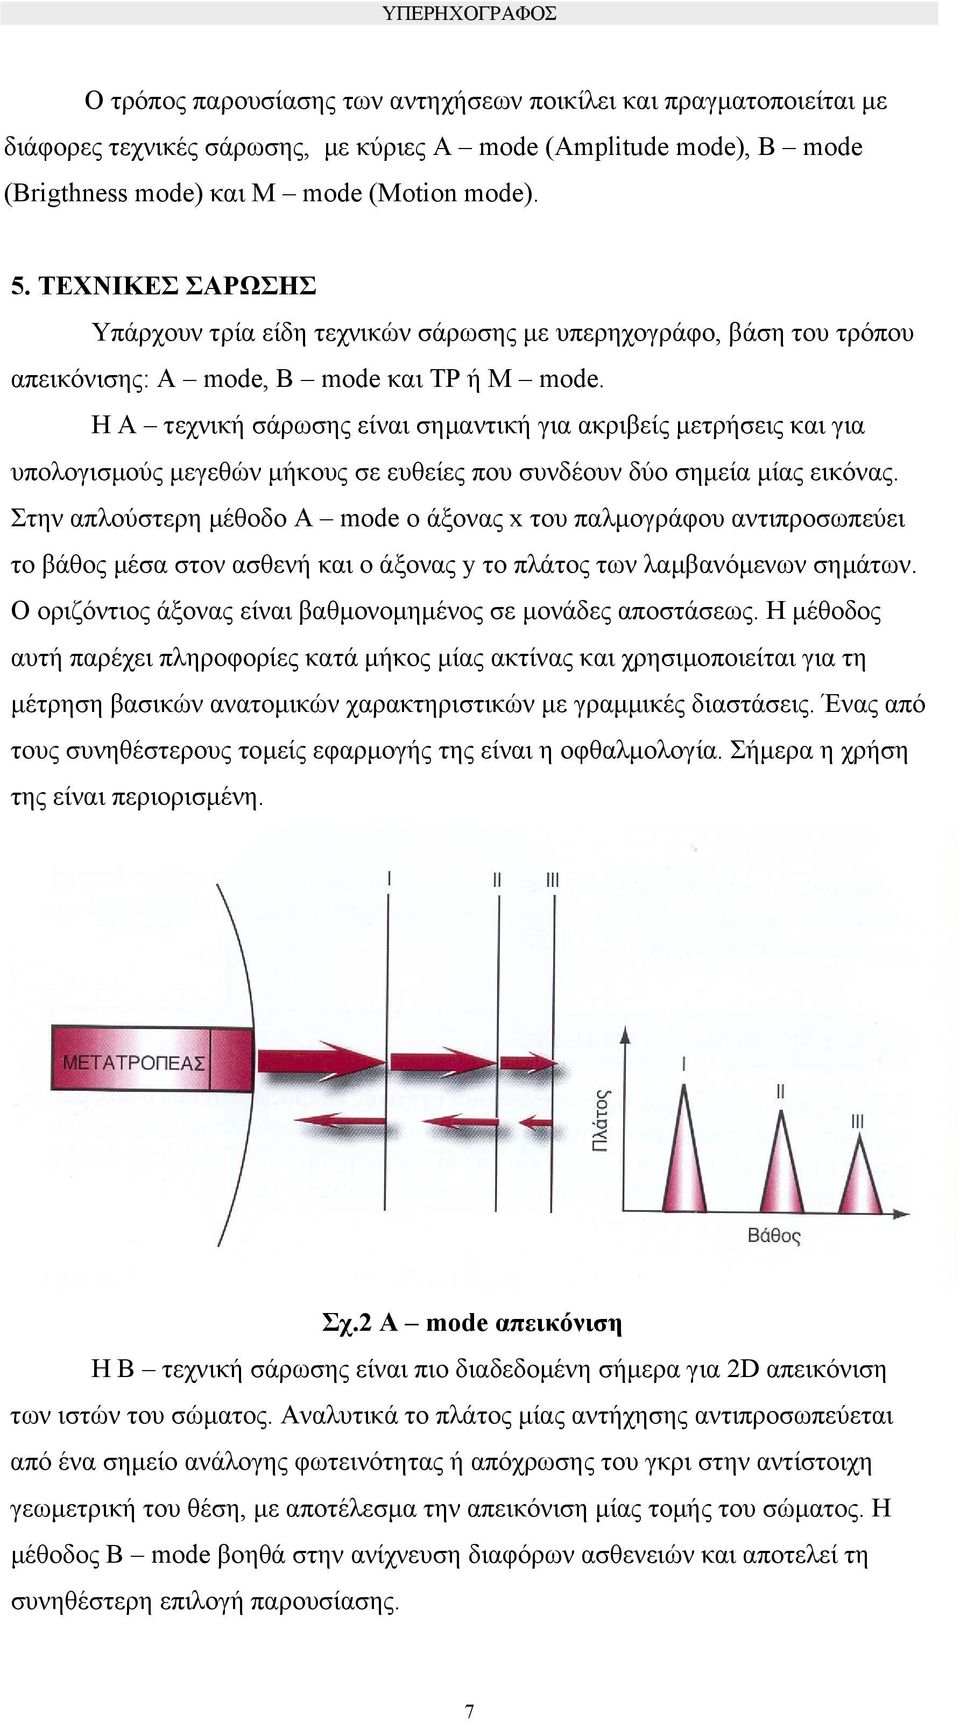 Η Α τεχνική σάρωσης είναι σηµαντική για ακριβείς µετρήσεις και για υπολογισµούς µεγεθών µήκους σε ευθείες που συνδέουν δύο σηµεία µίας εικόνας.